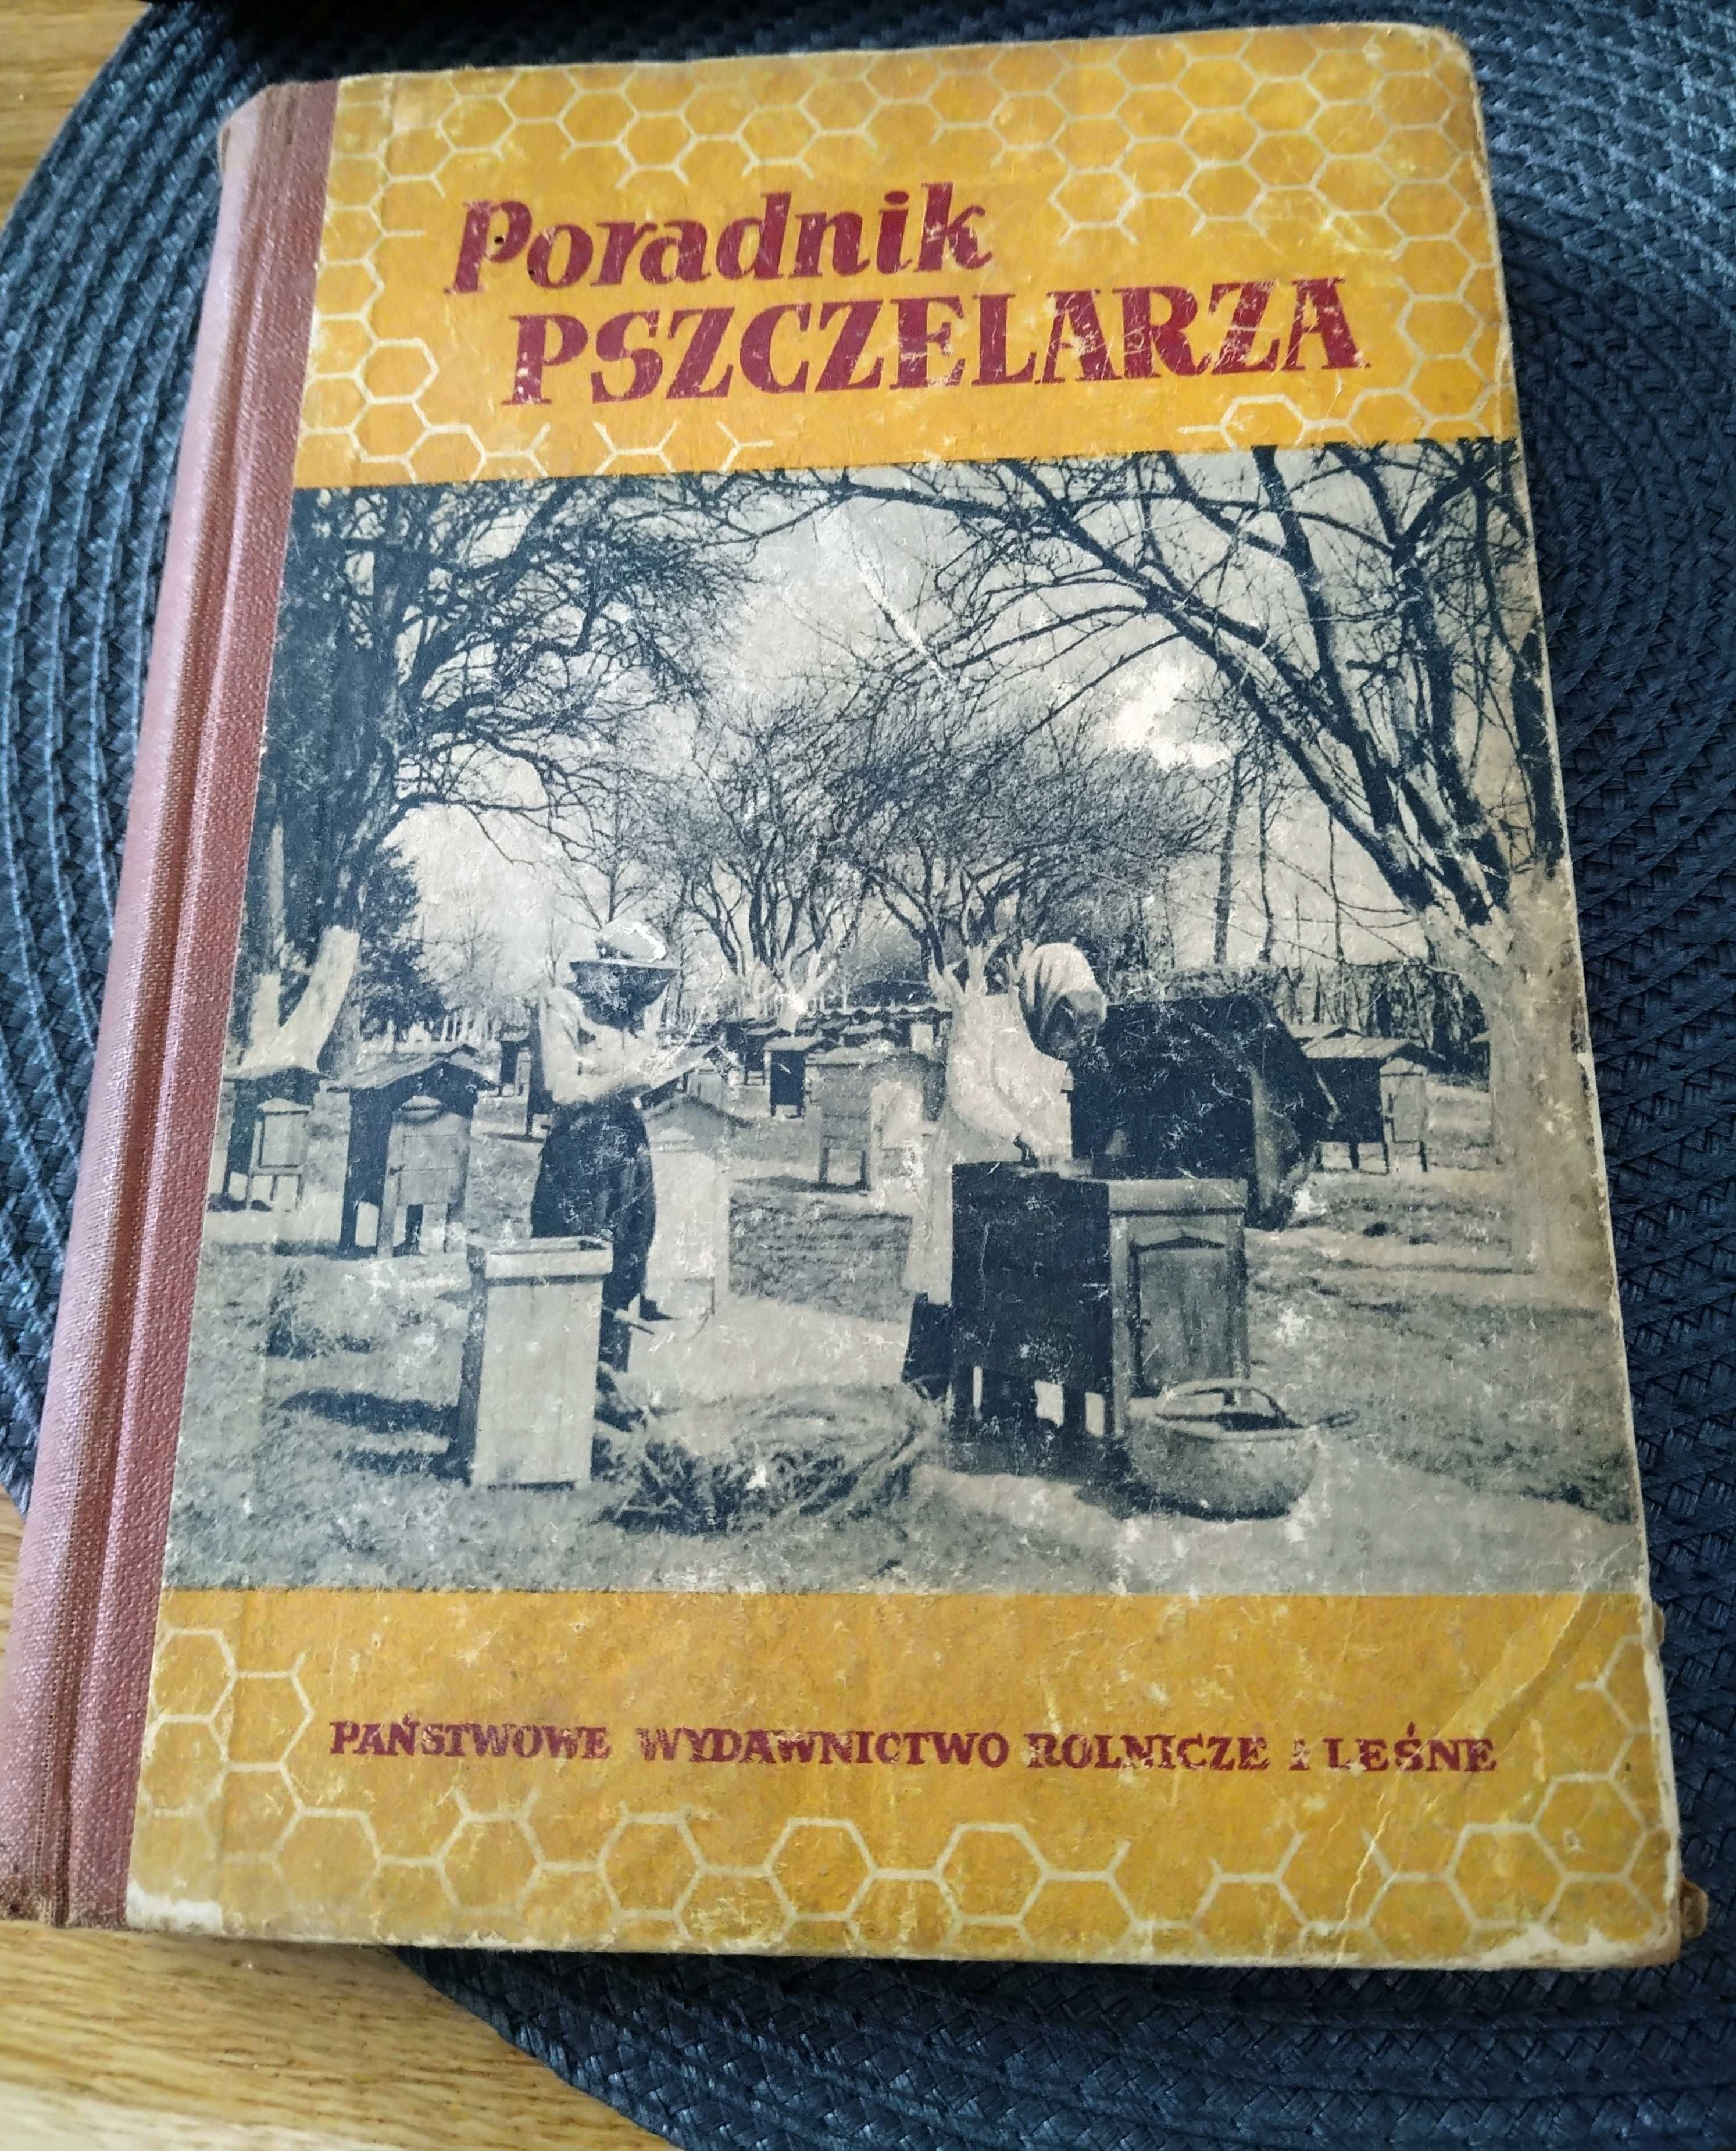 Poradnik pszczelarza, rok 1957, wydanie trzecie poprawione